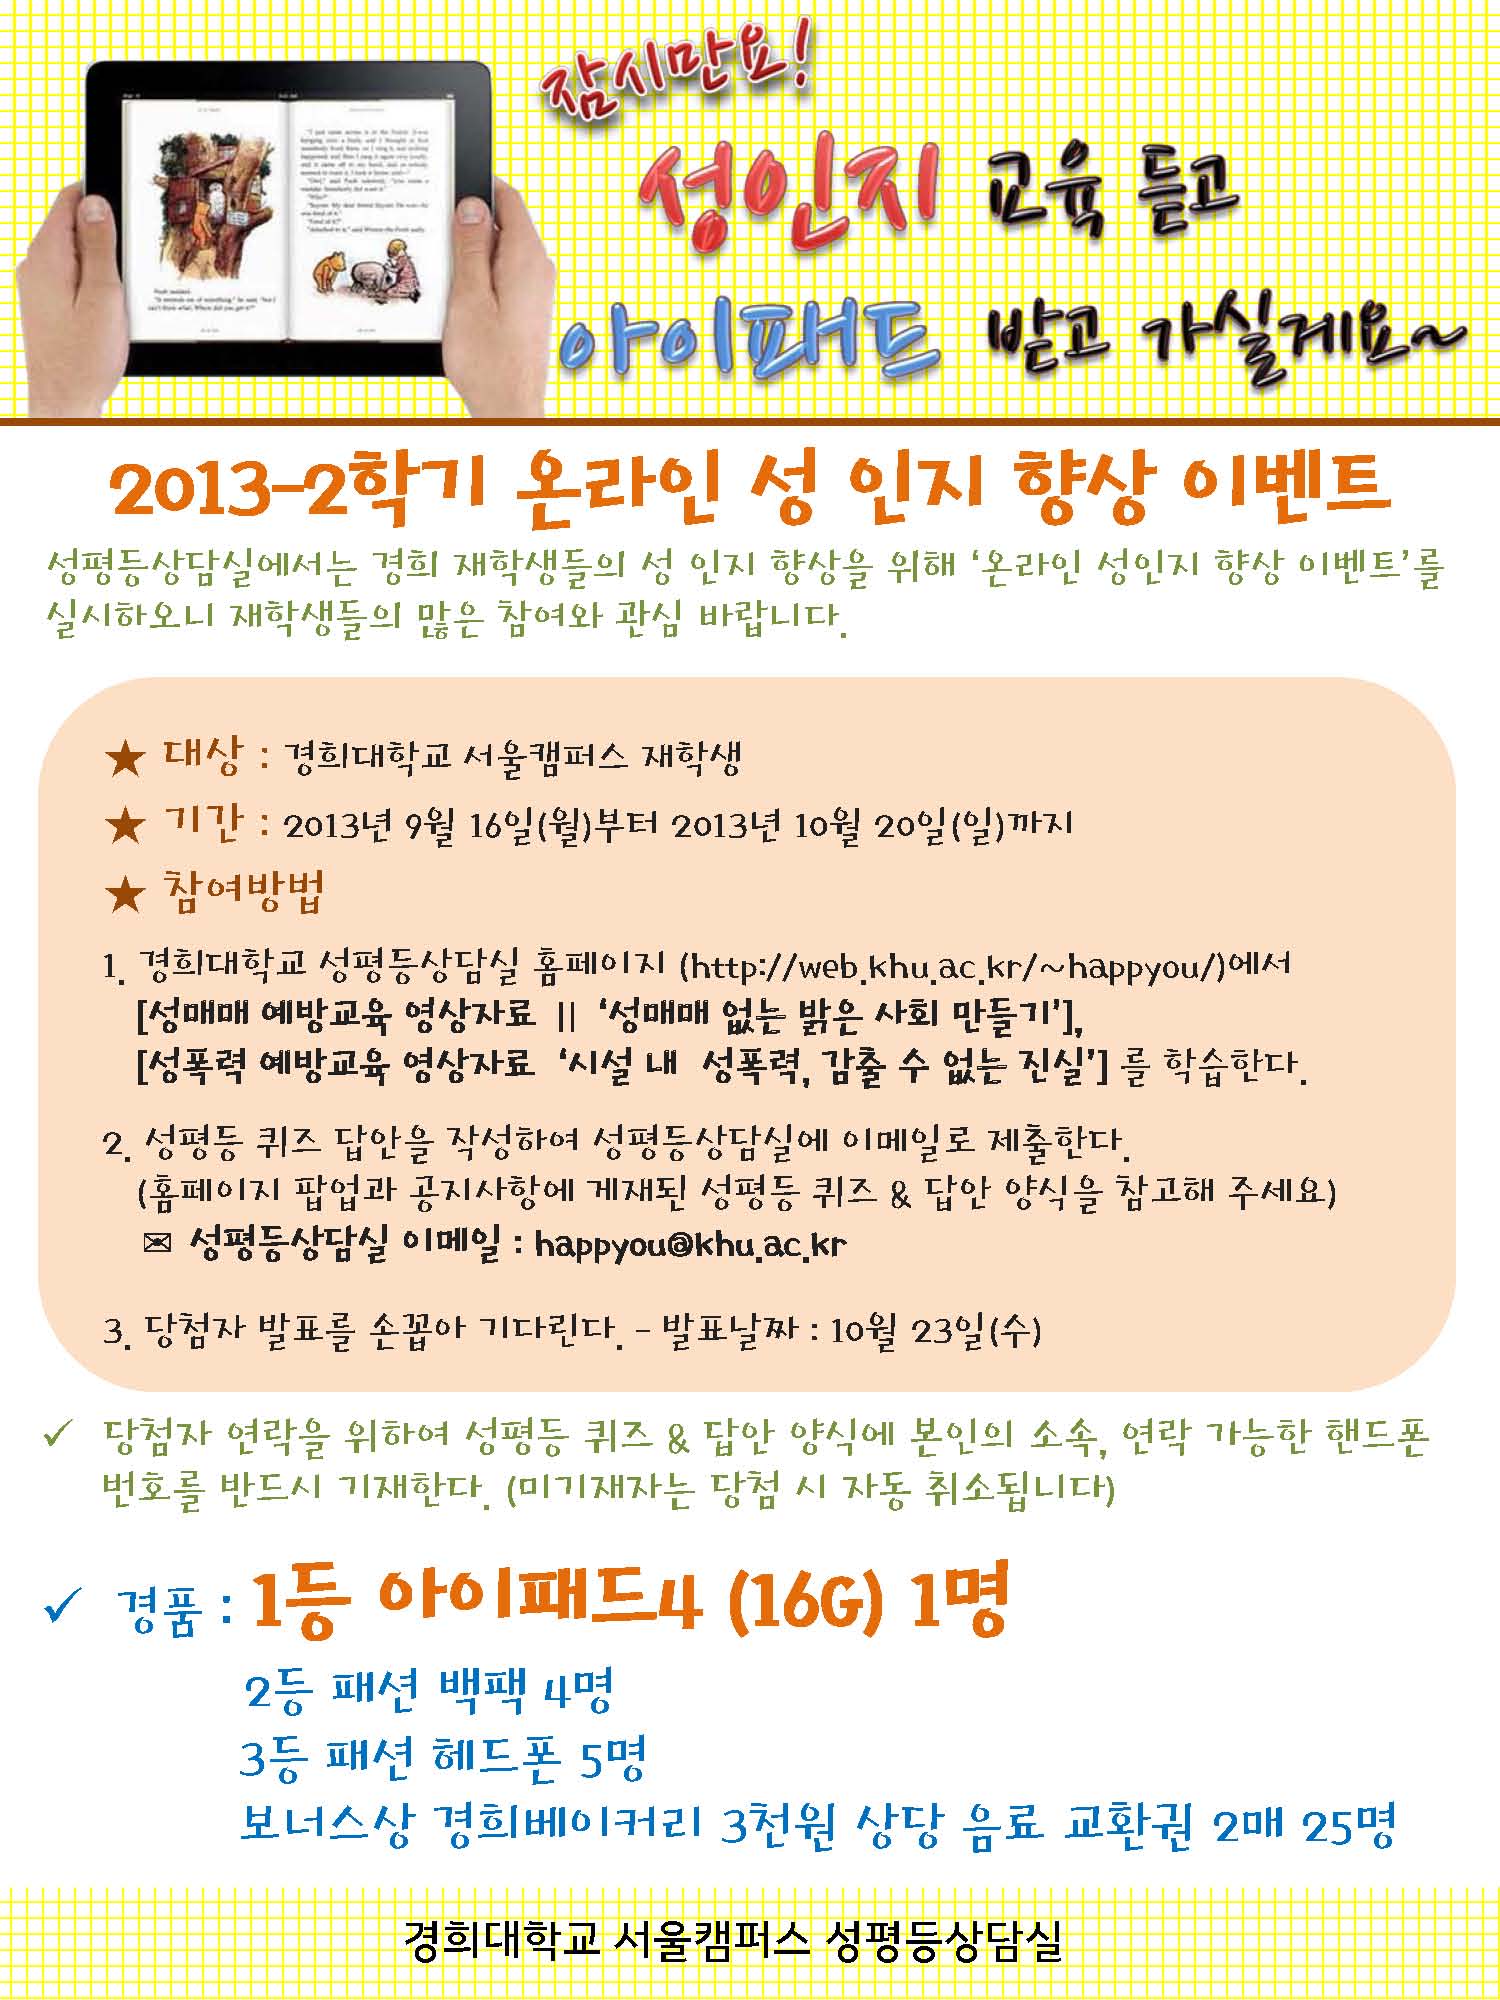 [홍보물]2013-2 온라인성인지향상이벤트 포스터.jpg